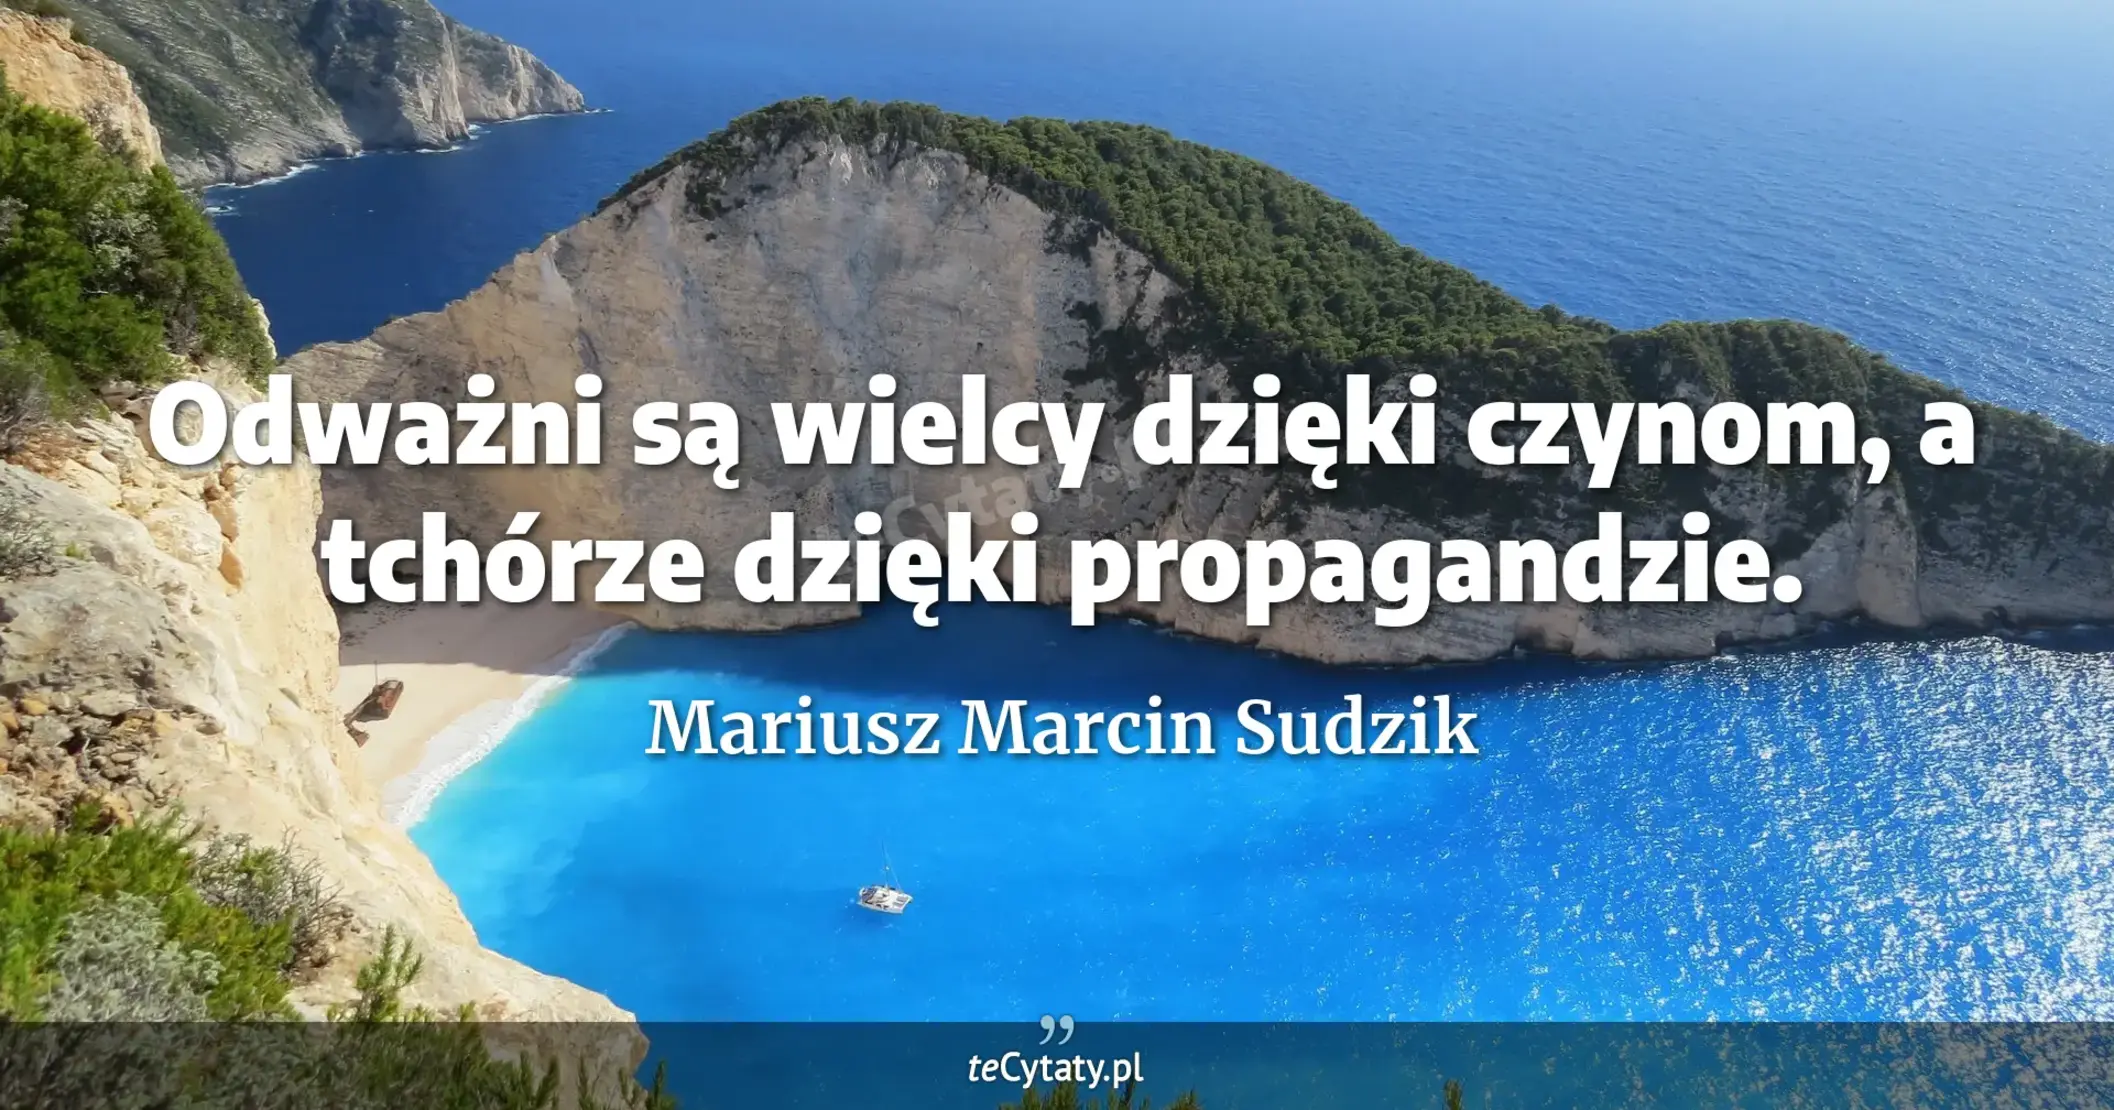 Odważni są wielcy dzięki czynom, a tchórze dzięki propagandzie. - Mariusz Marcin Sudzik